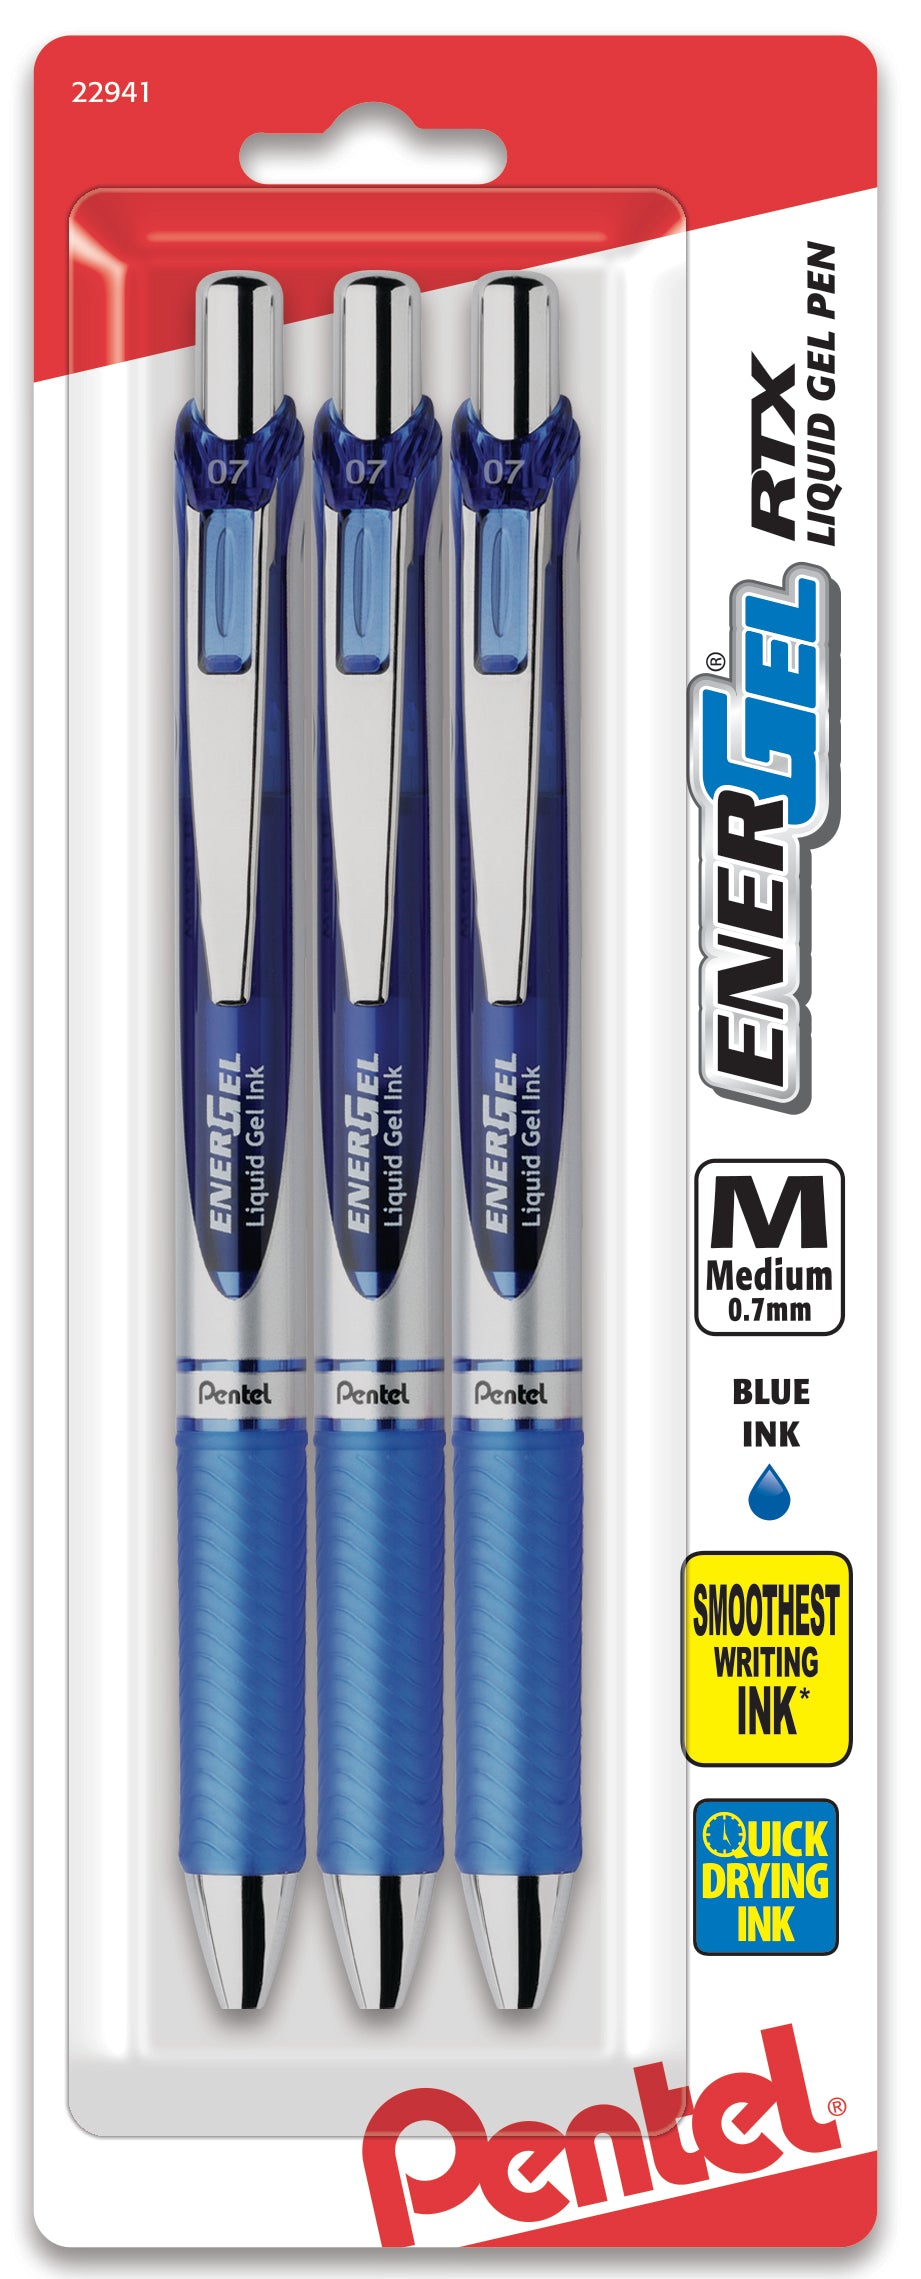 Blauwdruk zadel poort EnerGel RTX Refillable Liquid Gel Pen, 0.7mm, Blue Ink 3-pk — Pentel of  America, Ltd.